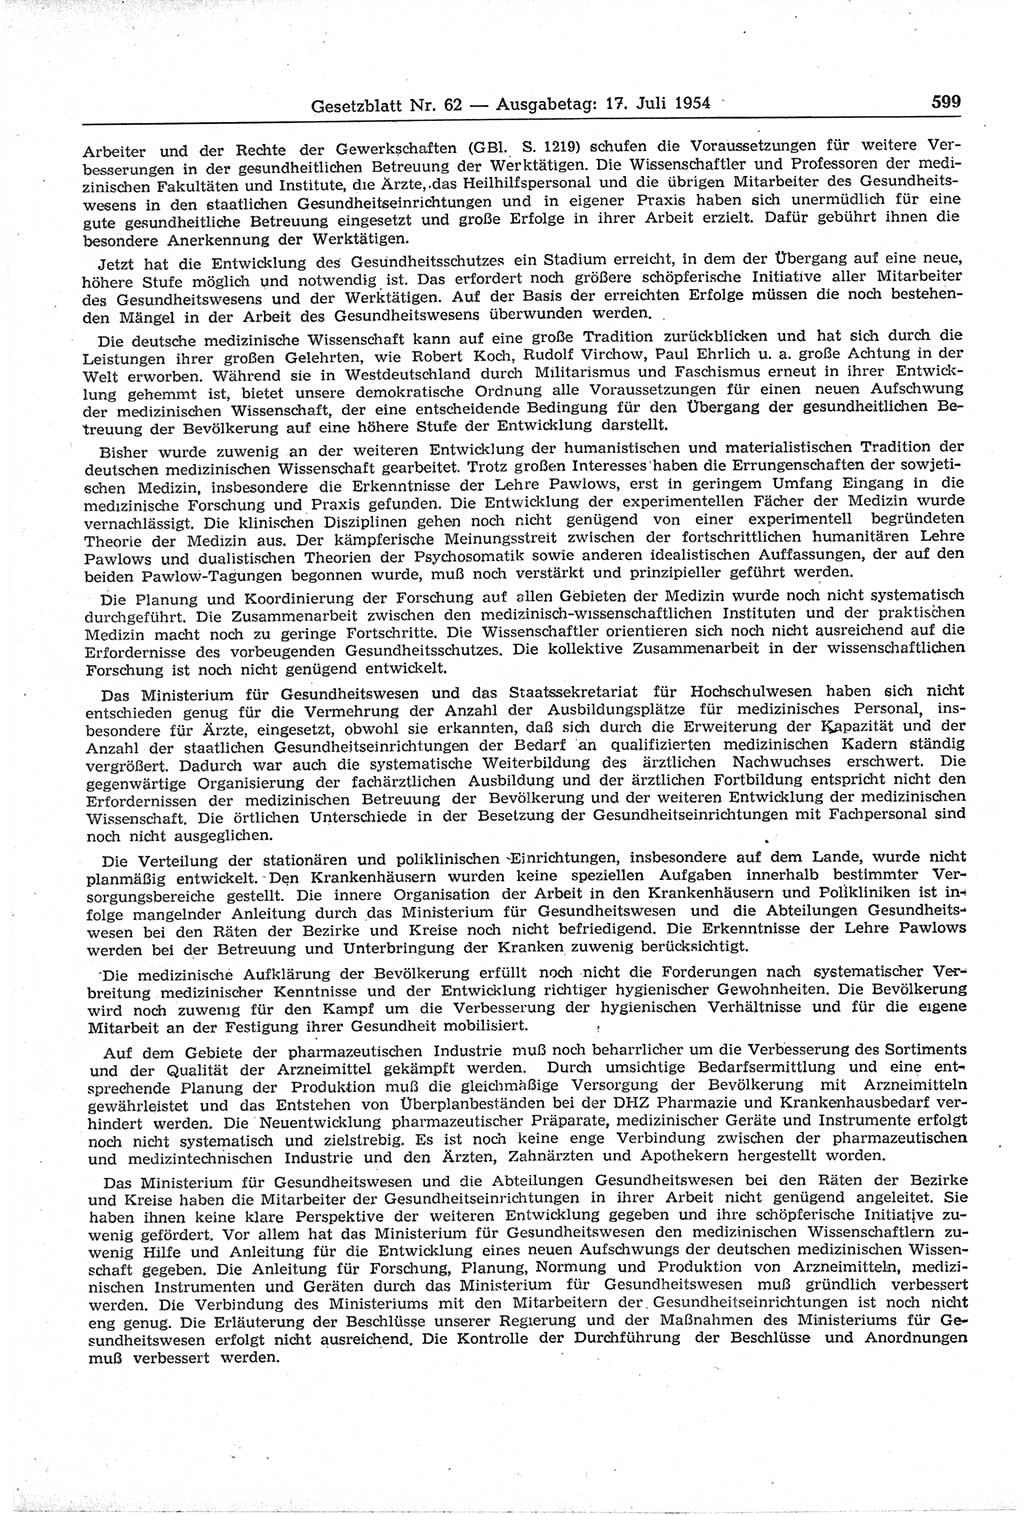 Gesetzblatt (GBl.) der Deutschen Demokratischen Republik (DDR) 1954, Seite 599 (GBl. DDR 1954, S. 599)